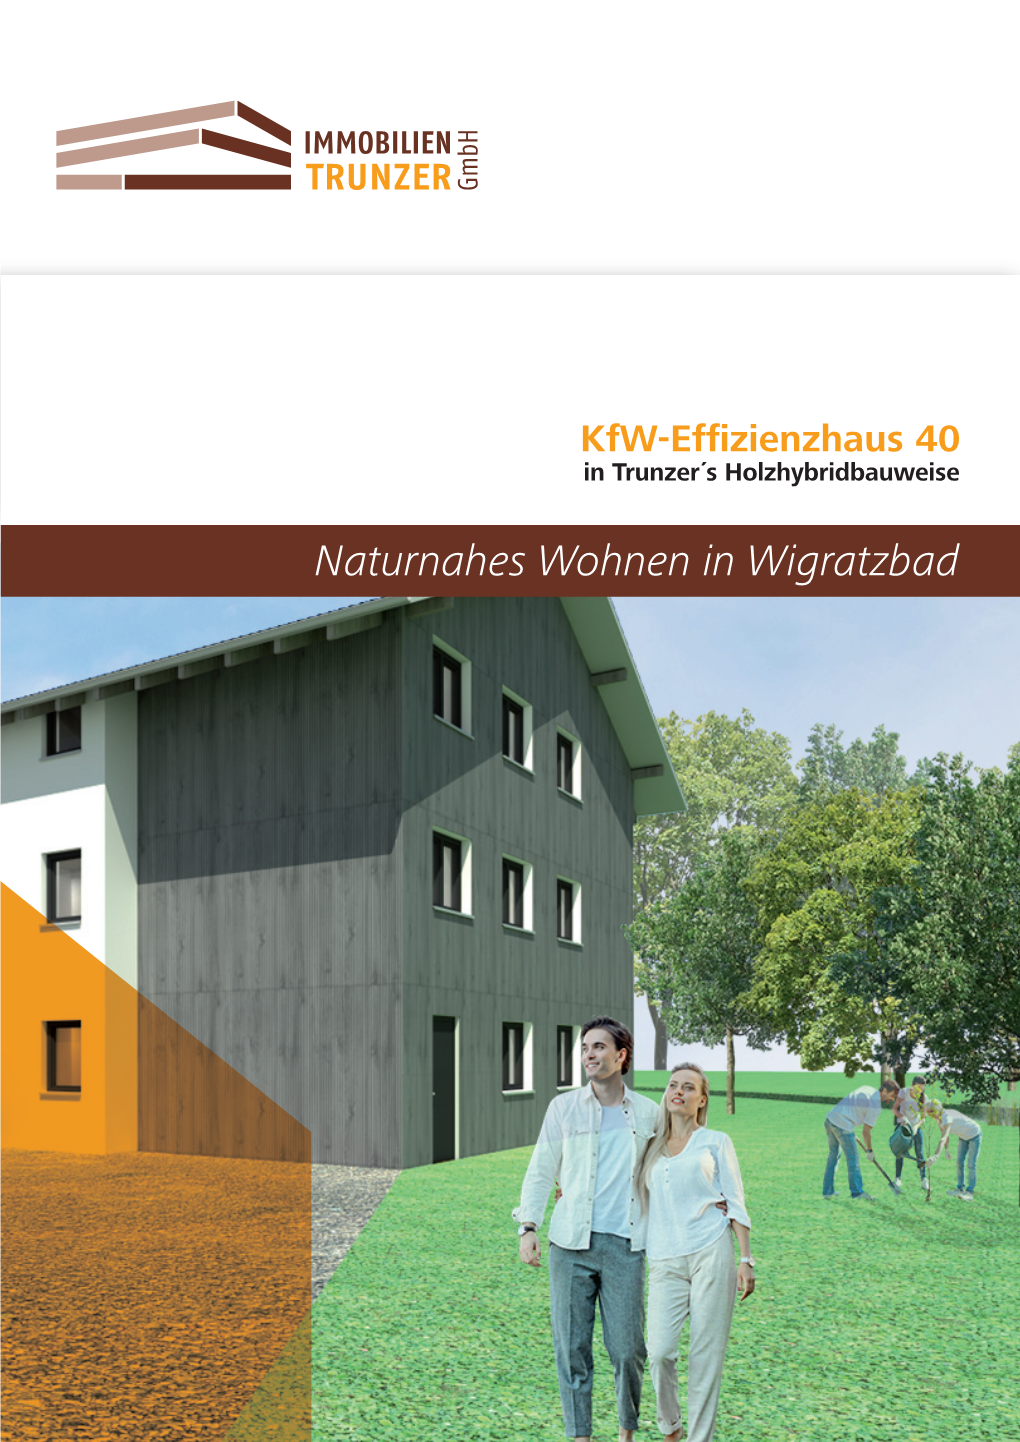 Naturnahes Wohnen in Wigratzbad 2 I 3 Immobilien Trunzer Standort